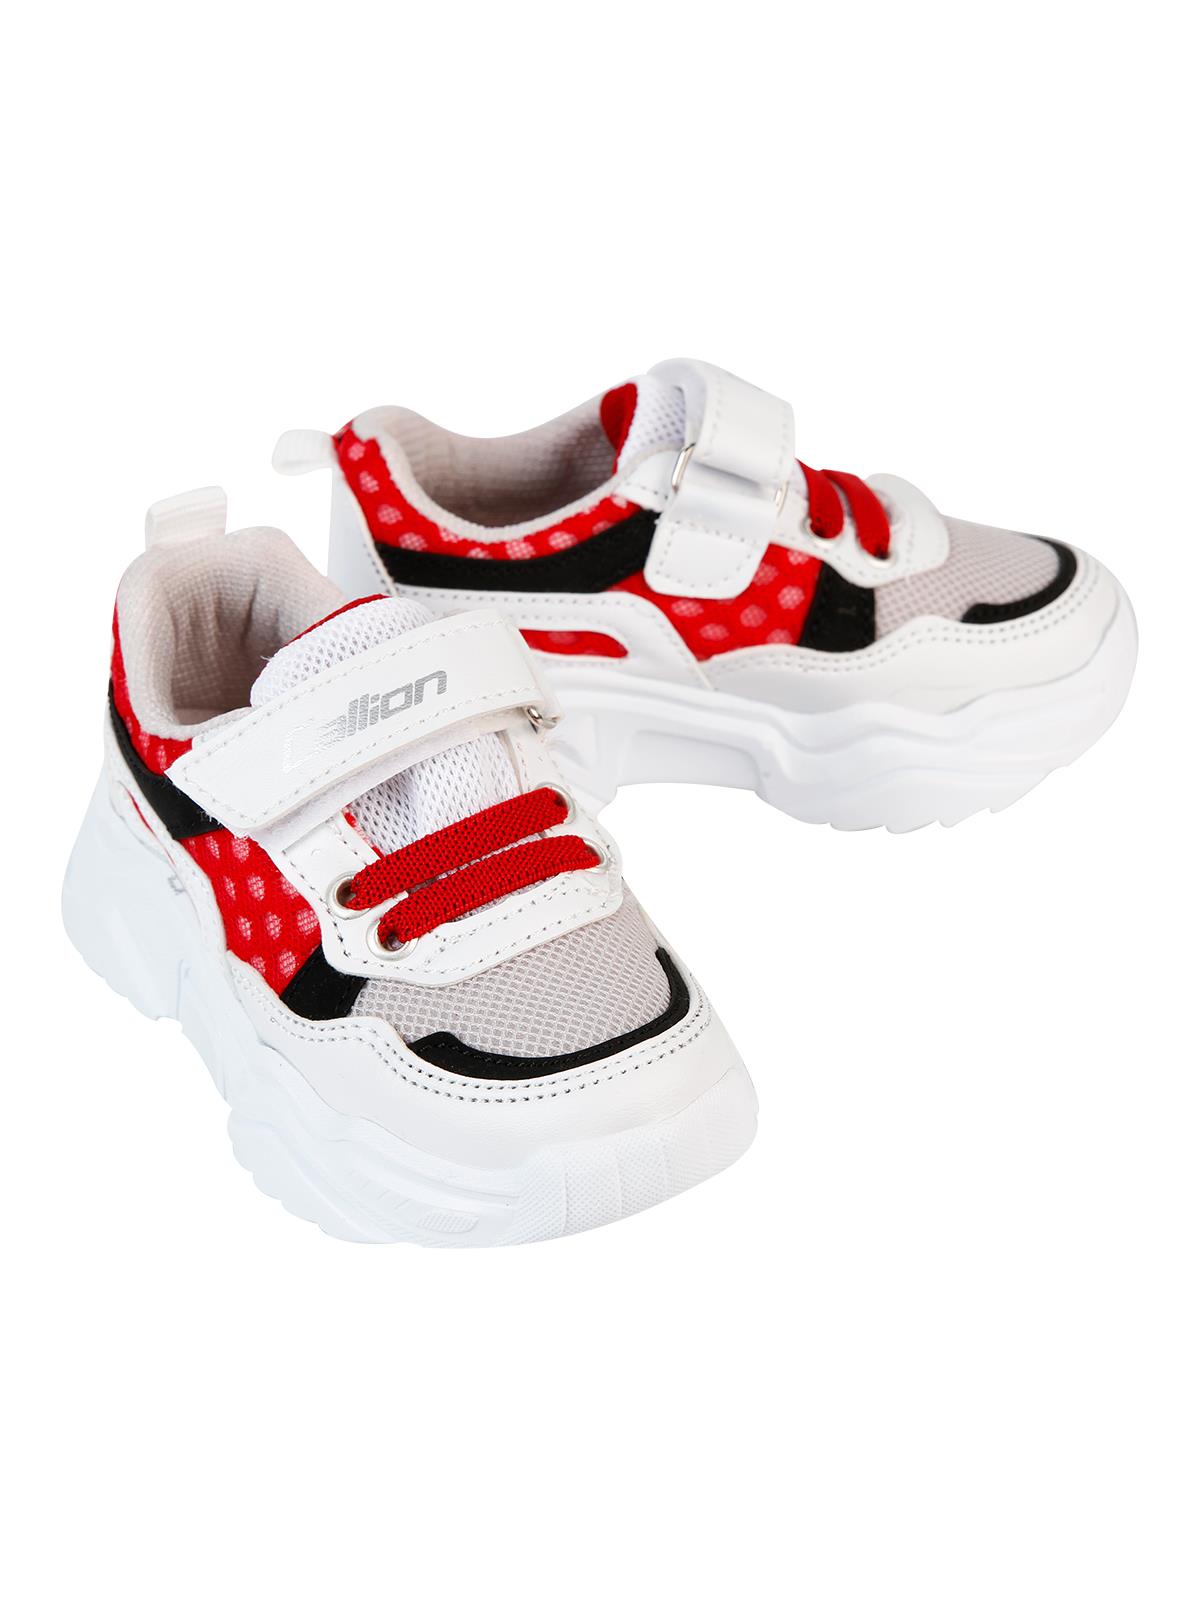 Callion Erkek Çocuk Spor Ayakkabı 22-25 Numara Beyaz-Kırmızı